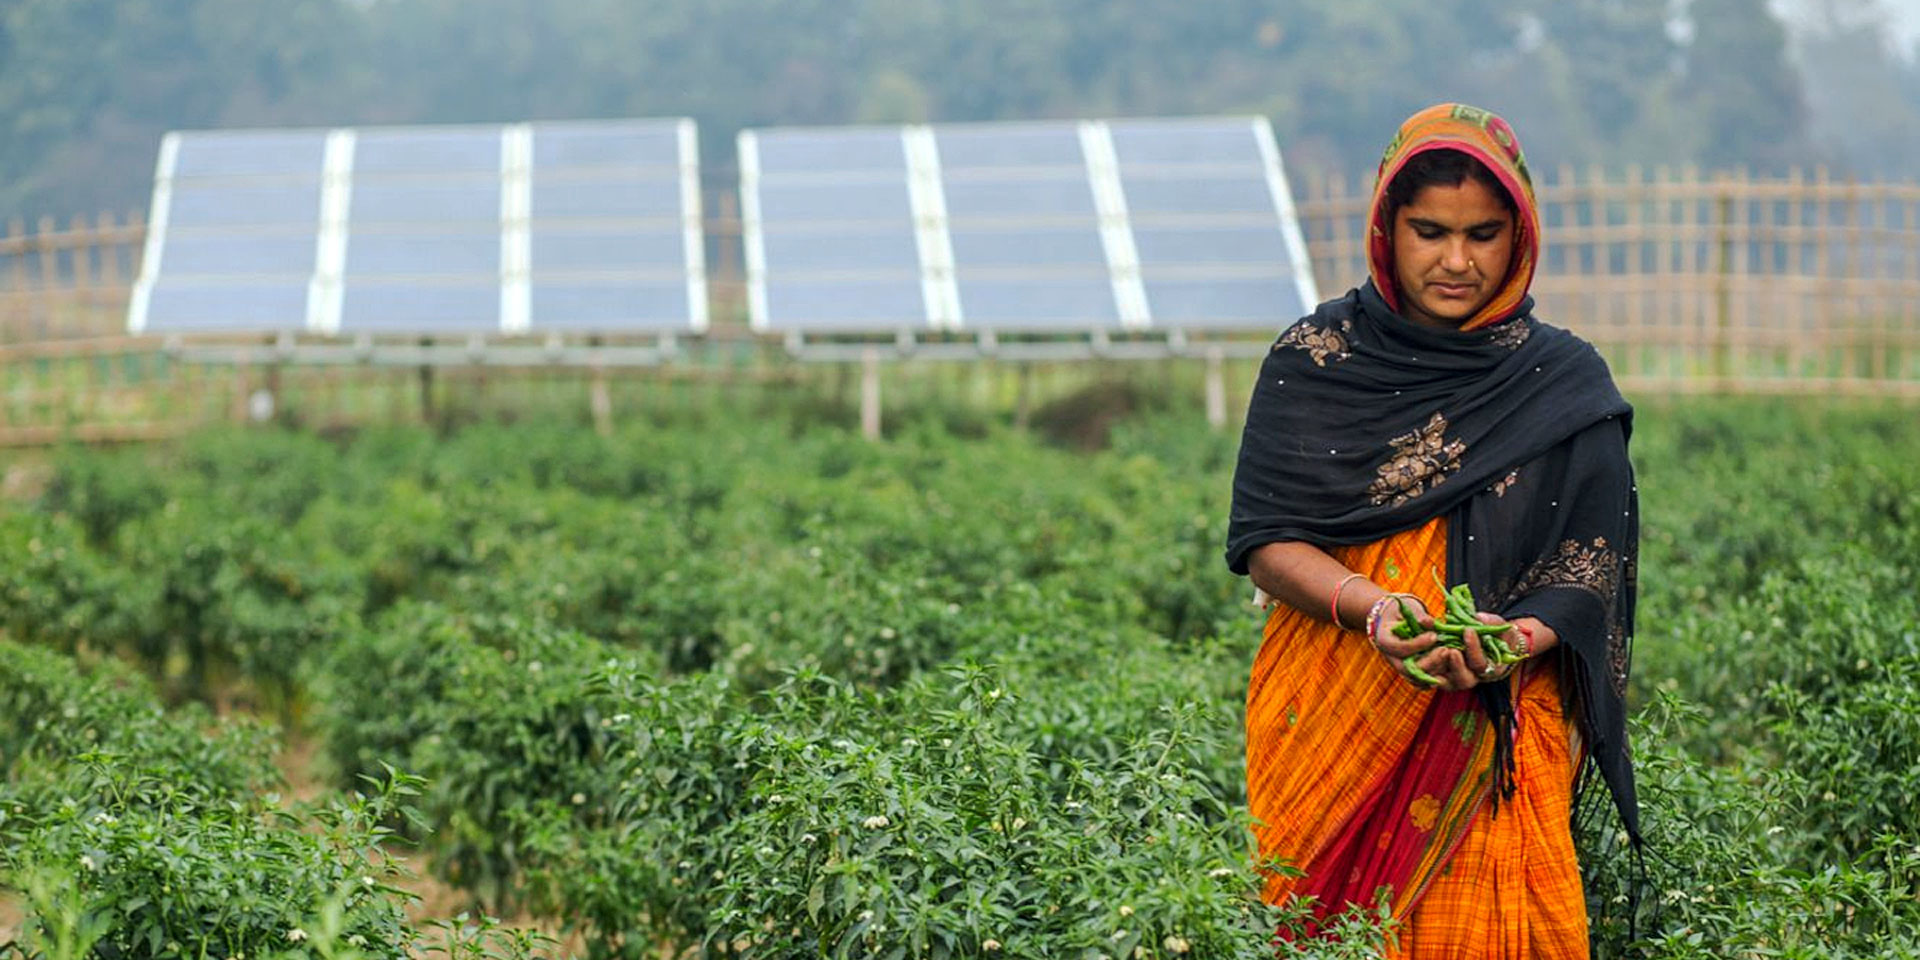 Eine Frau in einem orangen Sari erntet frisches, grünes Gemüse in einem sonst trockenen Gebiet. Im Hintergrund sind Solaranlagen erkennbar.